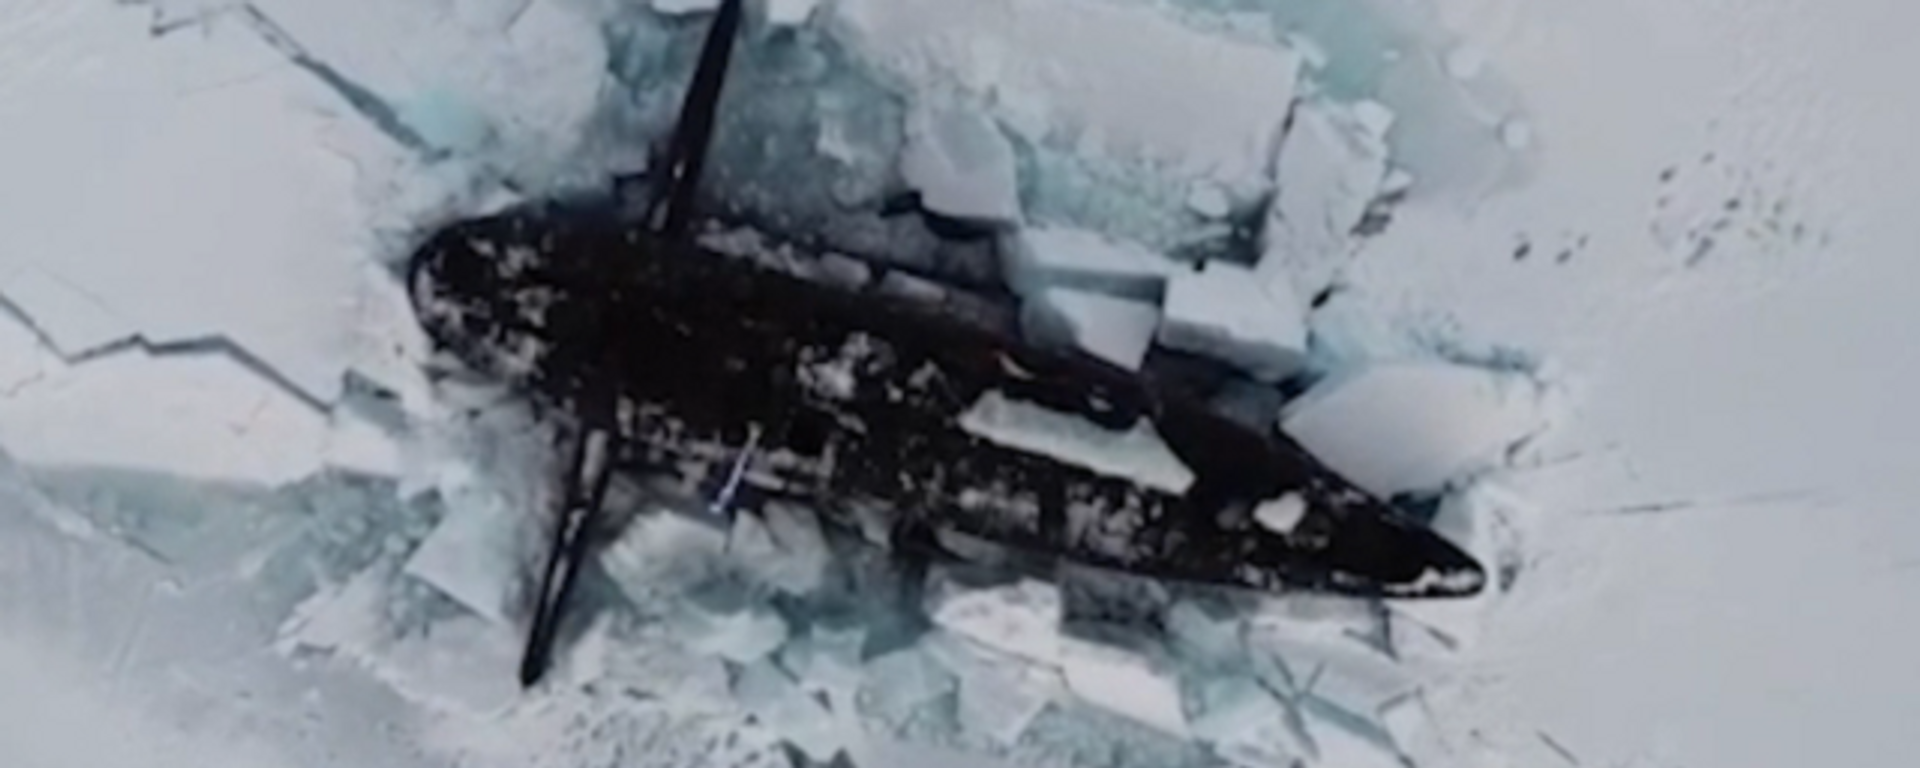  Tres submarinos nucleares rusos emergen juntos por debajo del hielo - Sputnik Mundo, 1920, 26.03.2021